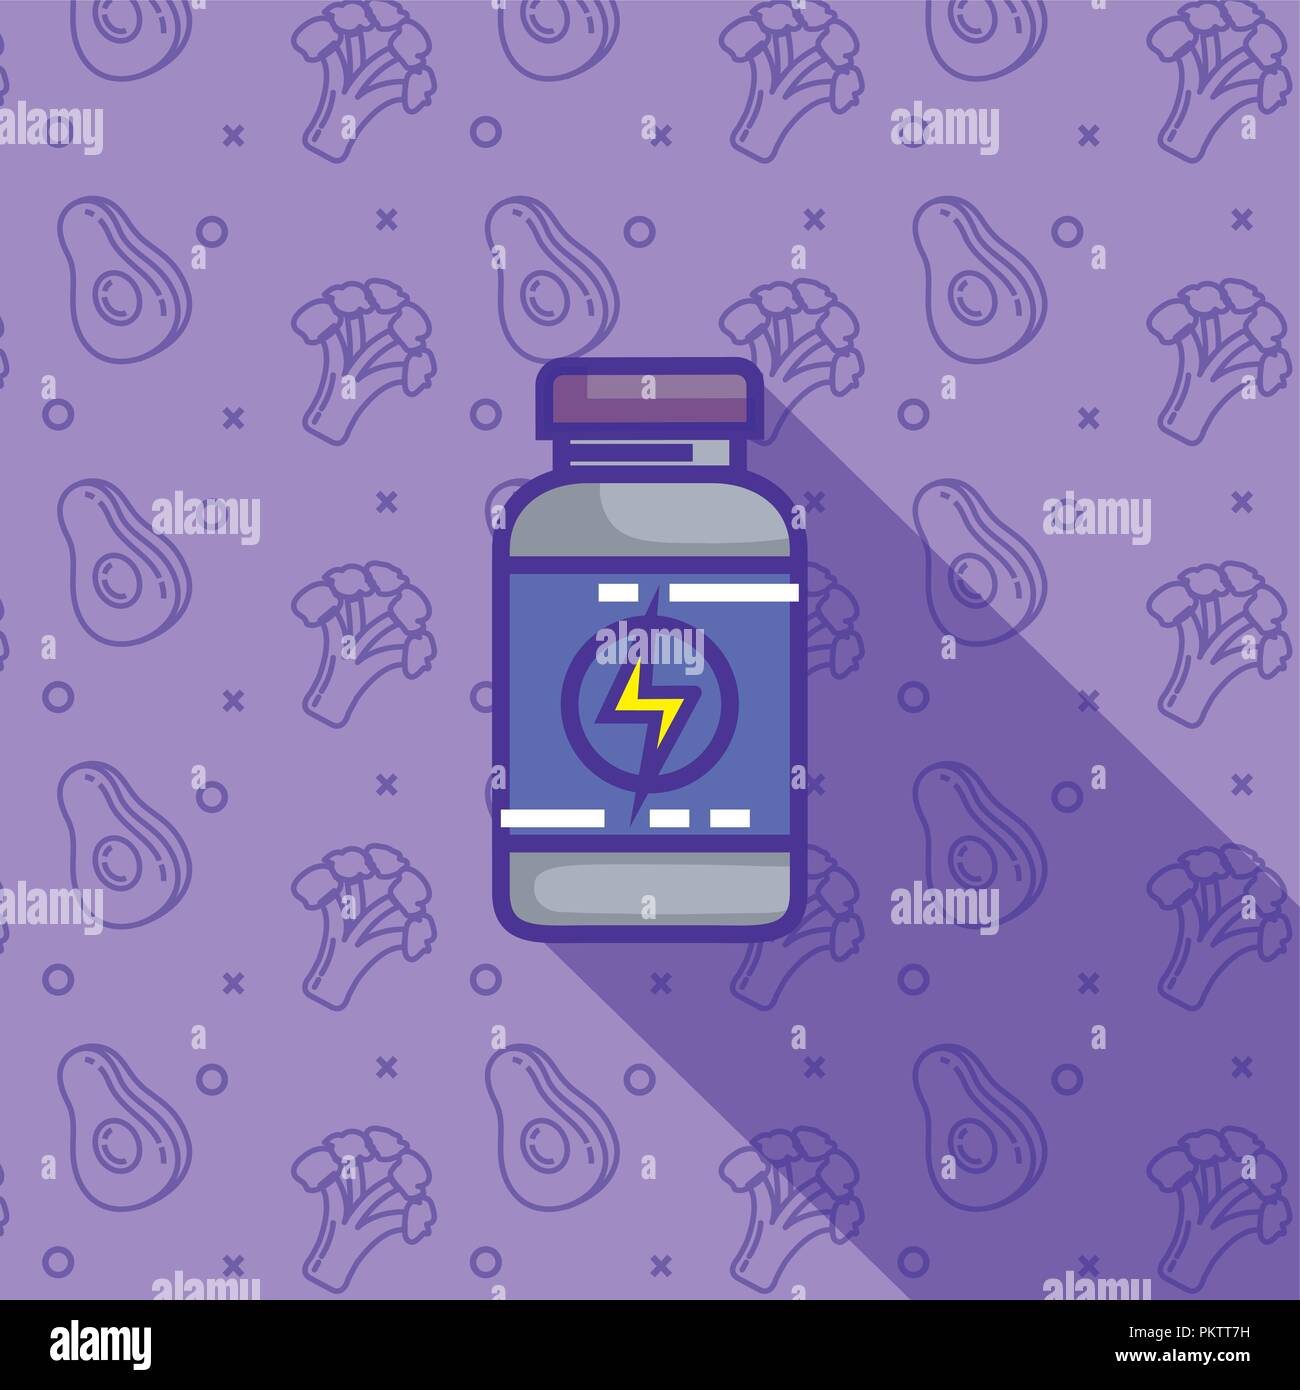 energy bottle plastic product Stock Vector Image & Art - Alamy